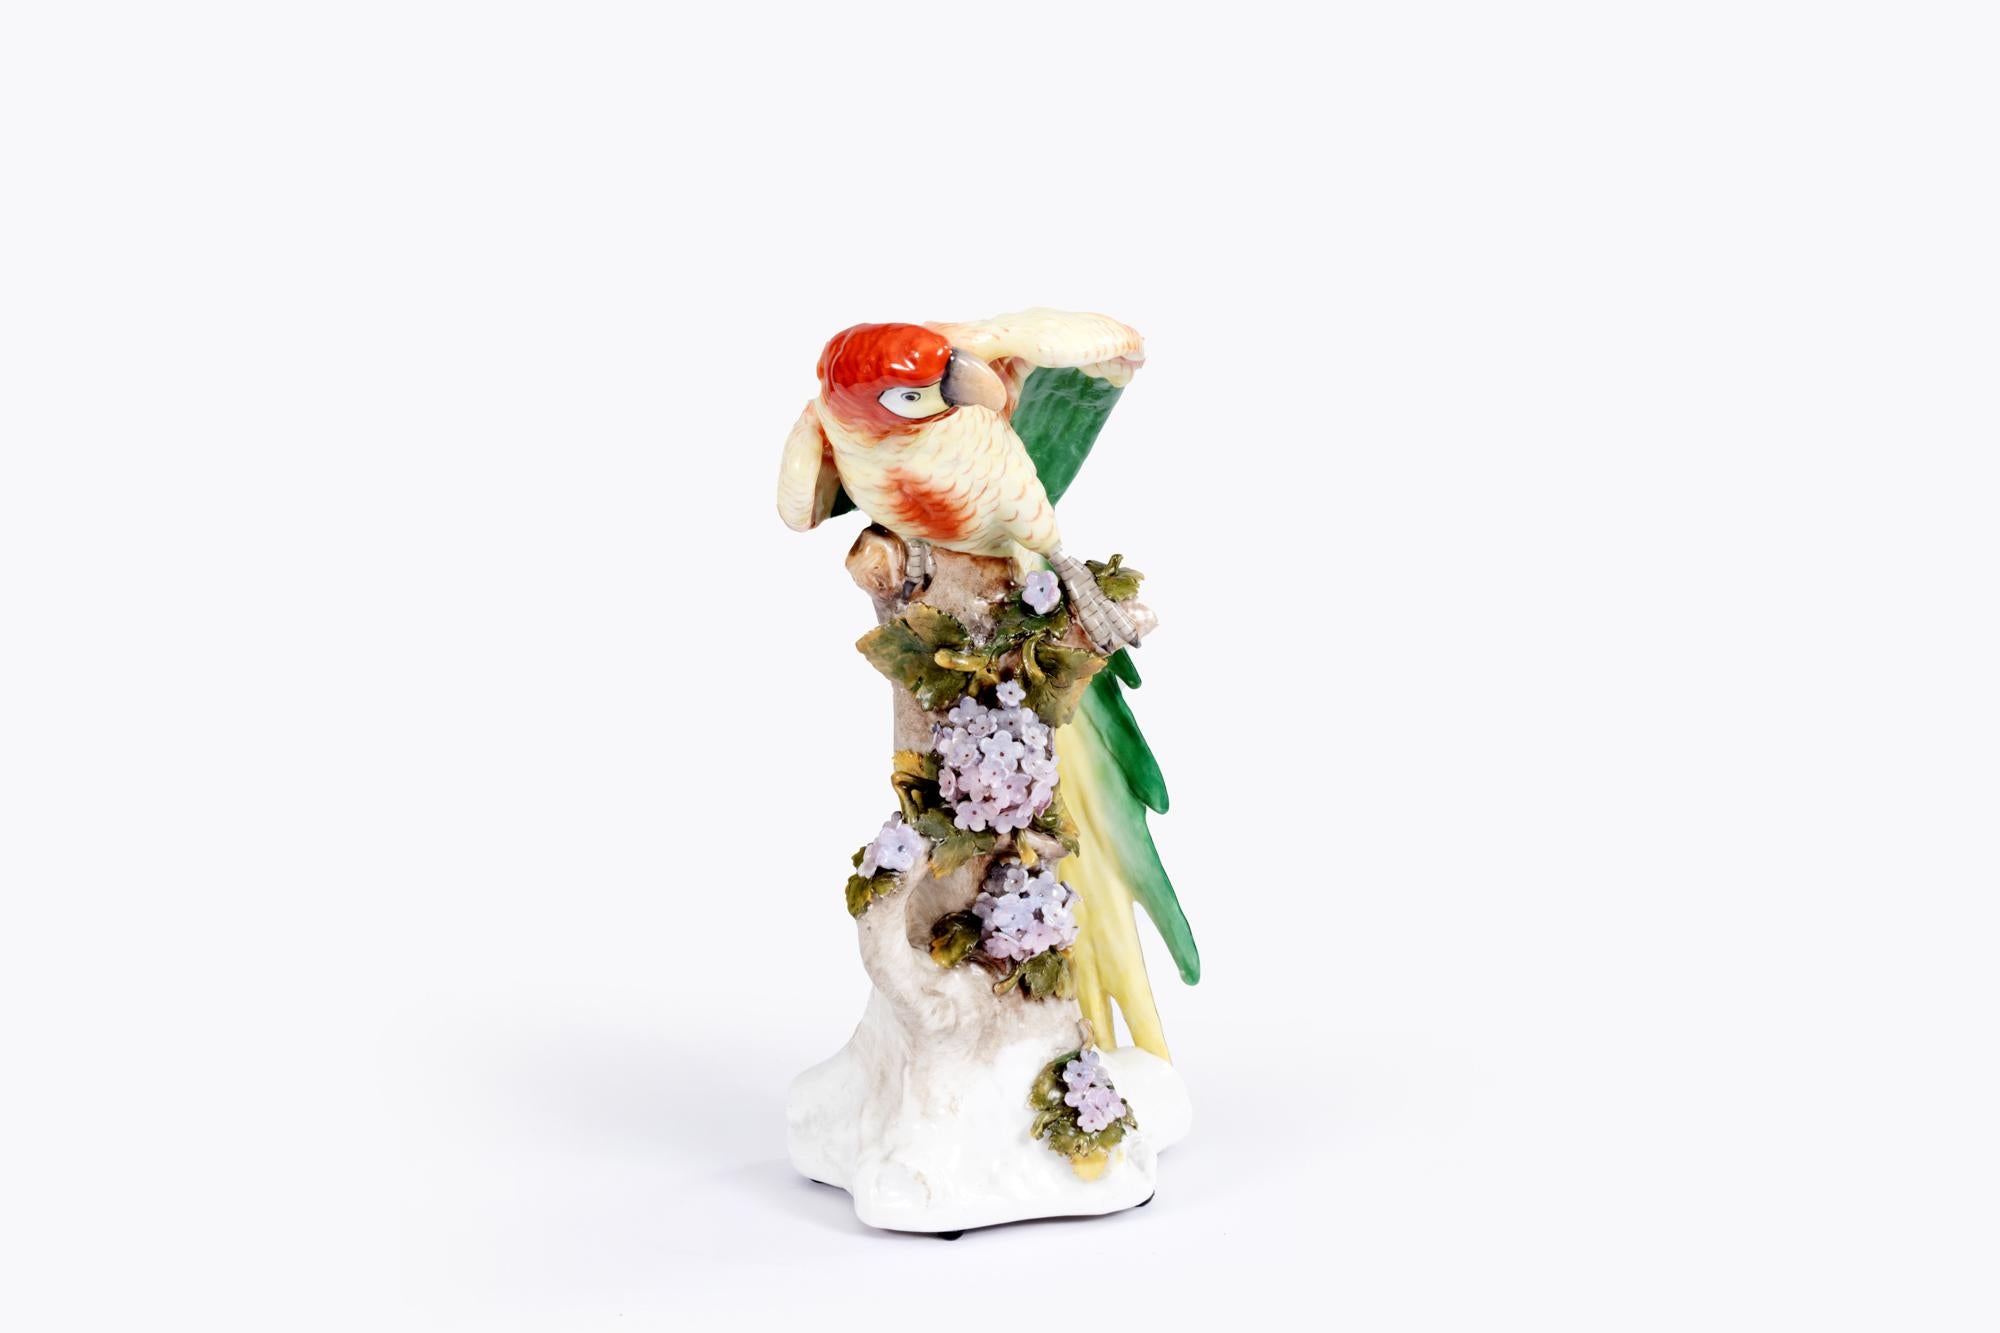 Perroquet en porcelaine de Meissen du 19e siècle, au plumage vivement coloré, modelé de façon naturaliste et perché sur une souche d'arbre ornée de feuilles et de fleurs.

En 1731, la manufacture de Meissen a inauguré un nouveau genre dans la